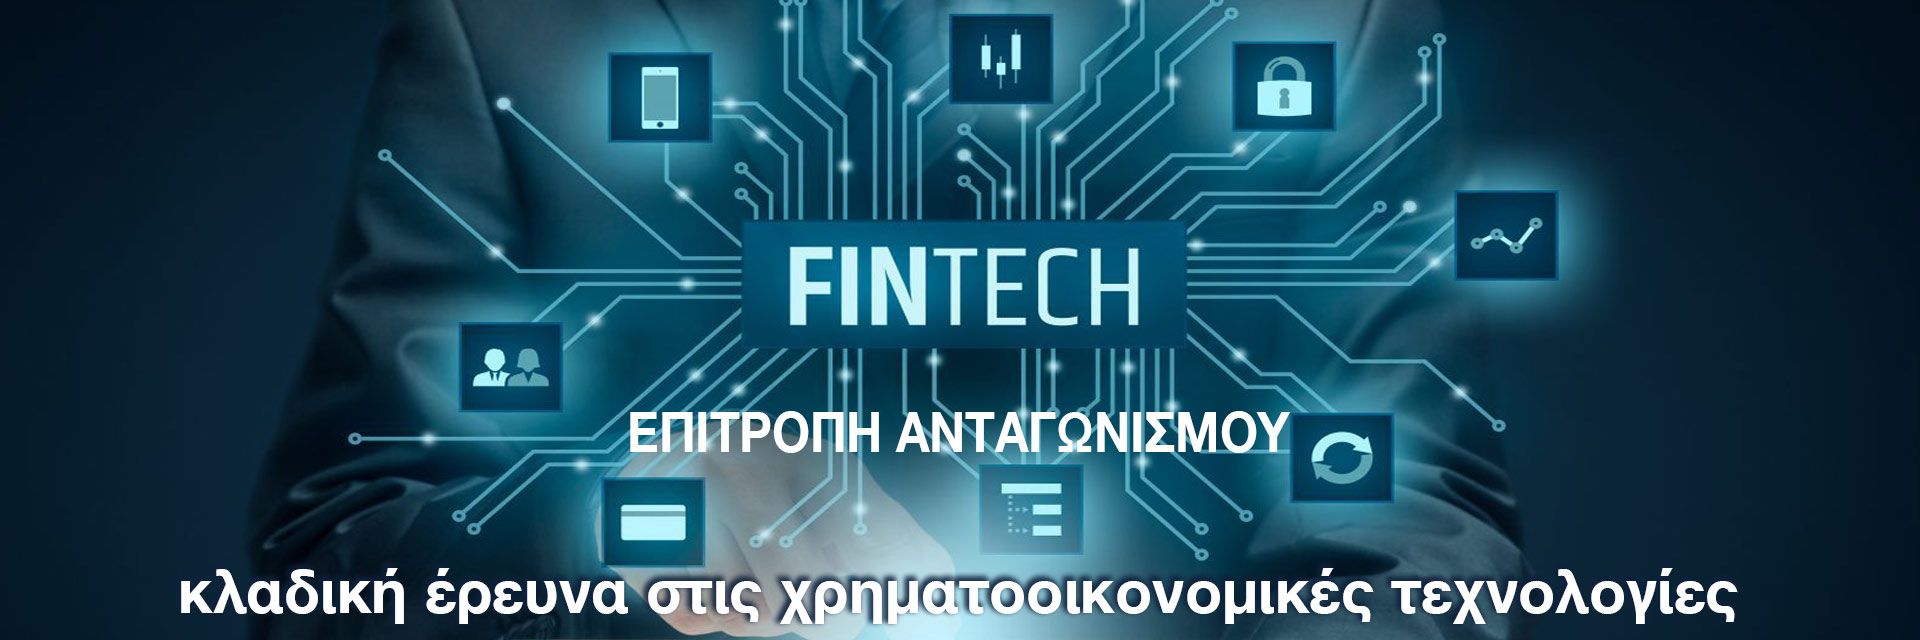 Δελτίο Τύπου - Κλαδική έρευνα της Επιτροπής Ανταγωνισμού στις χρηματοοικονομικές τεχνολογίες (Fintech)